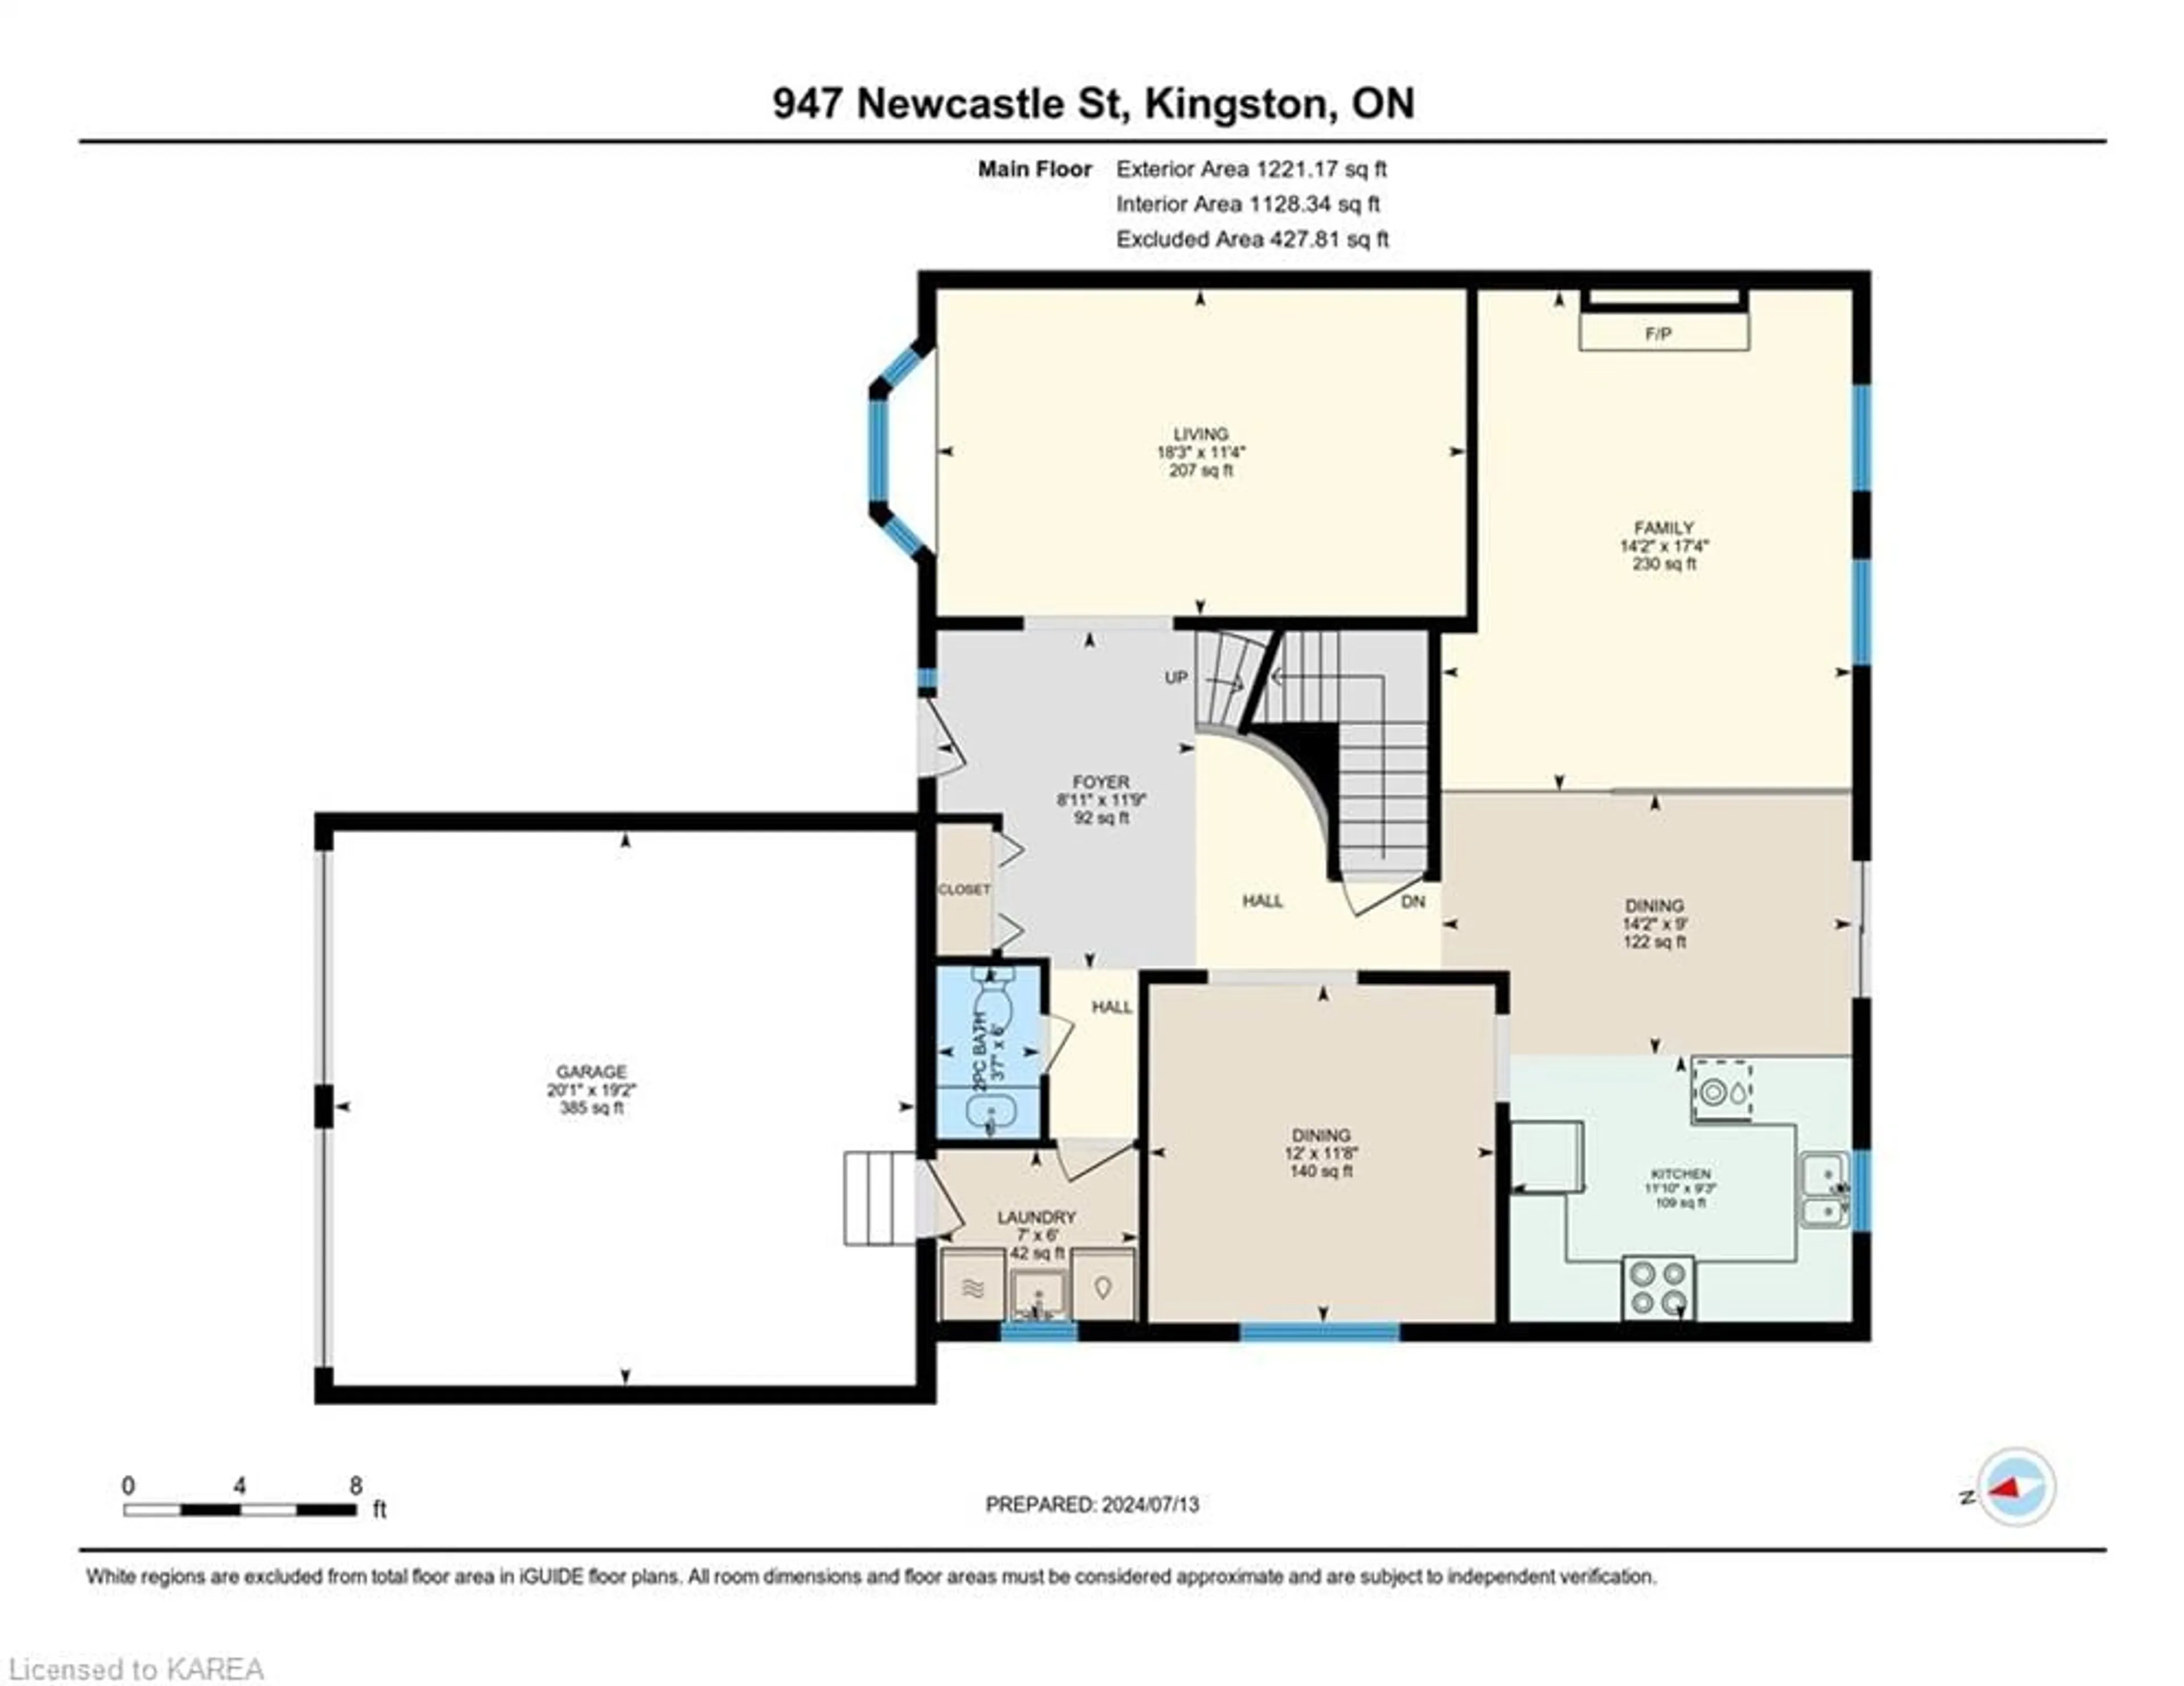 Floor plan for 947 Newcastle St, Kingston Ontario K7P 2H6